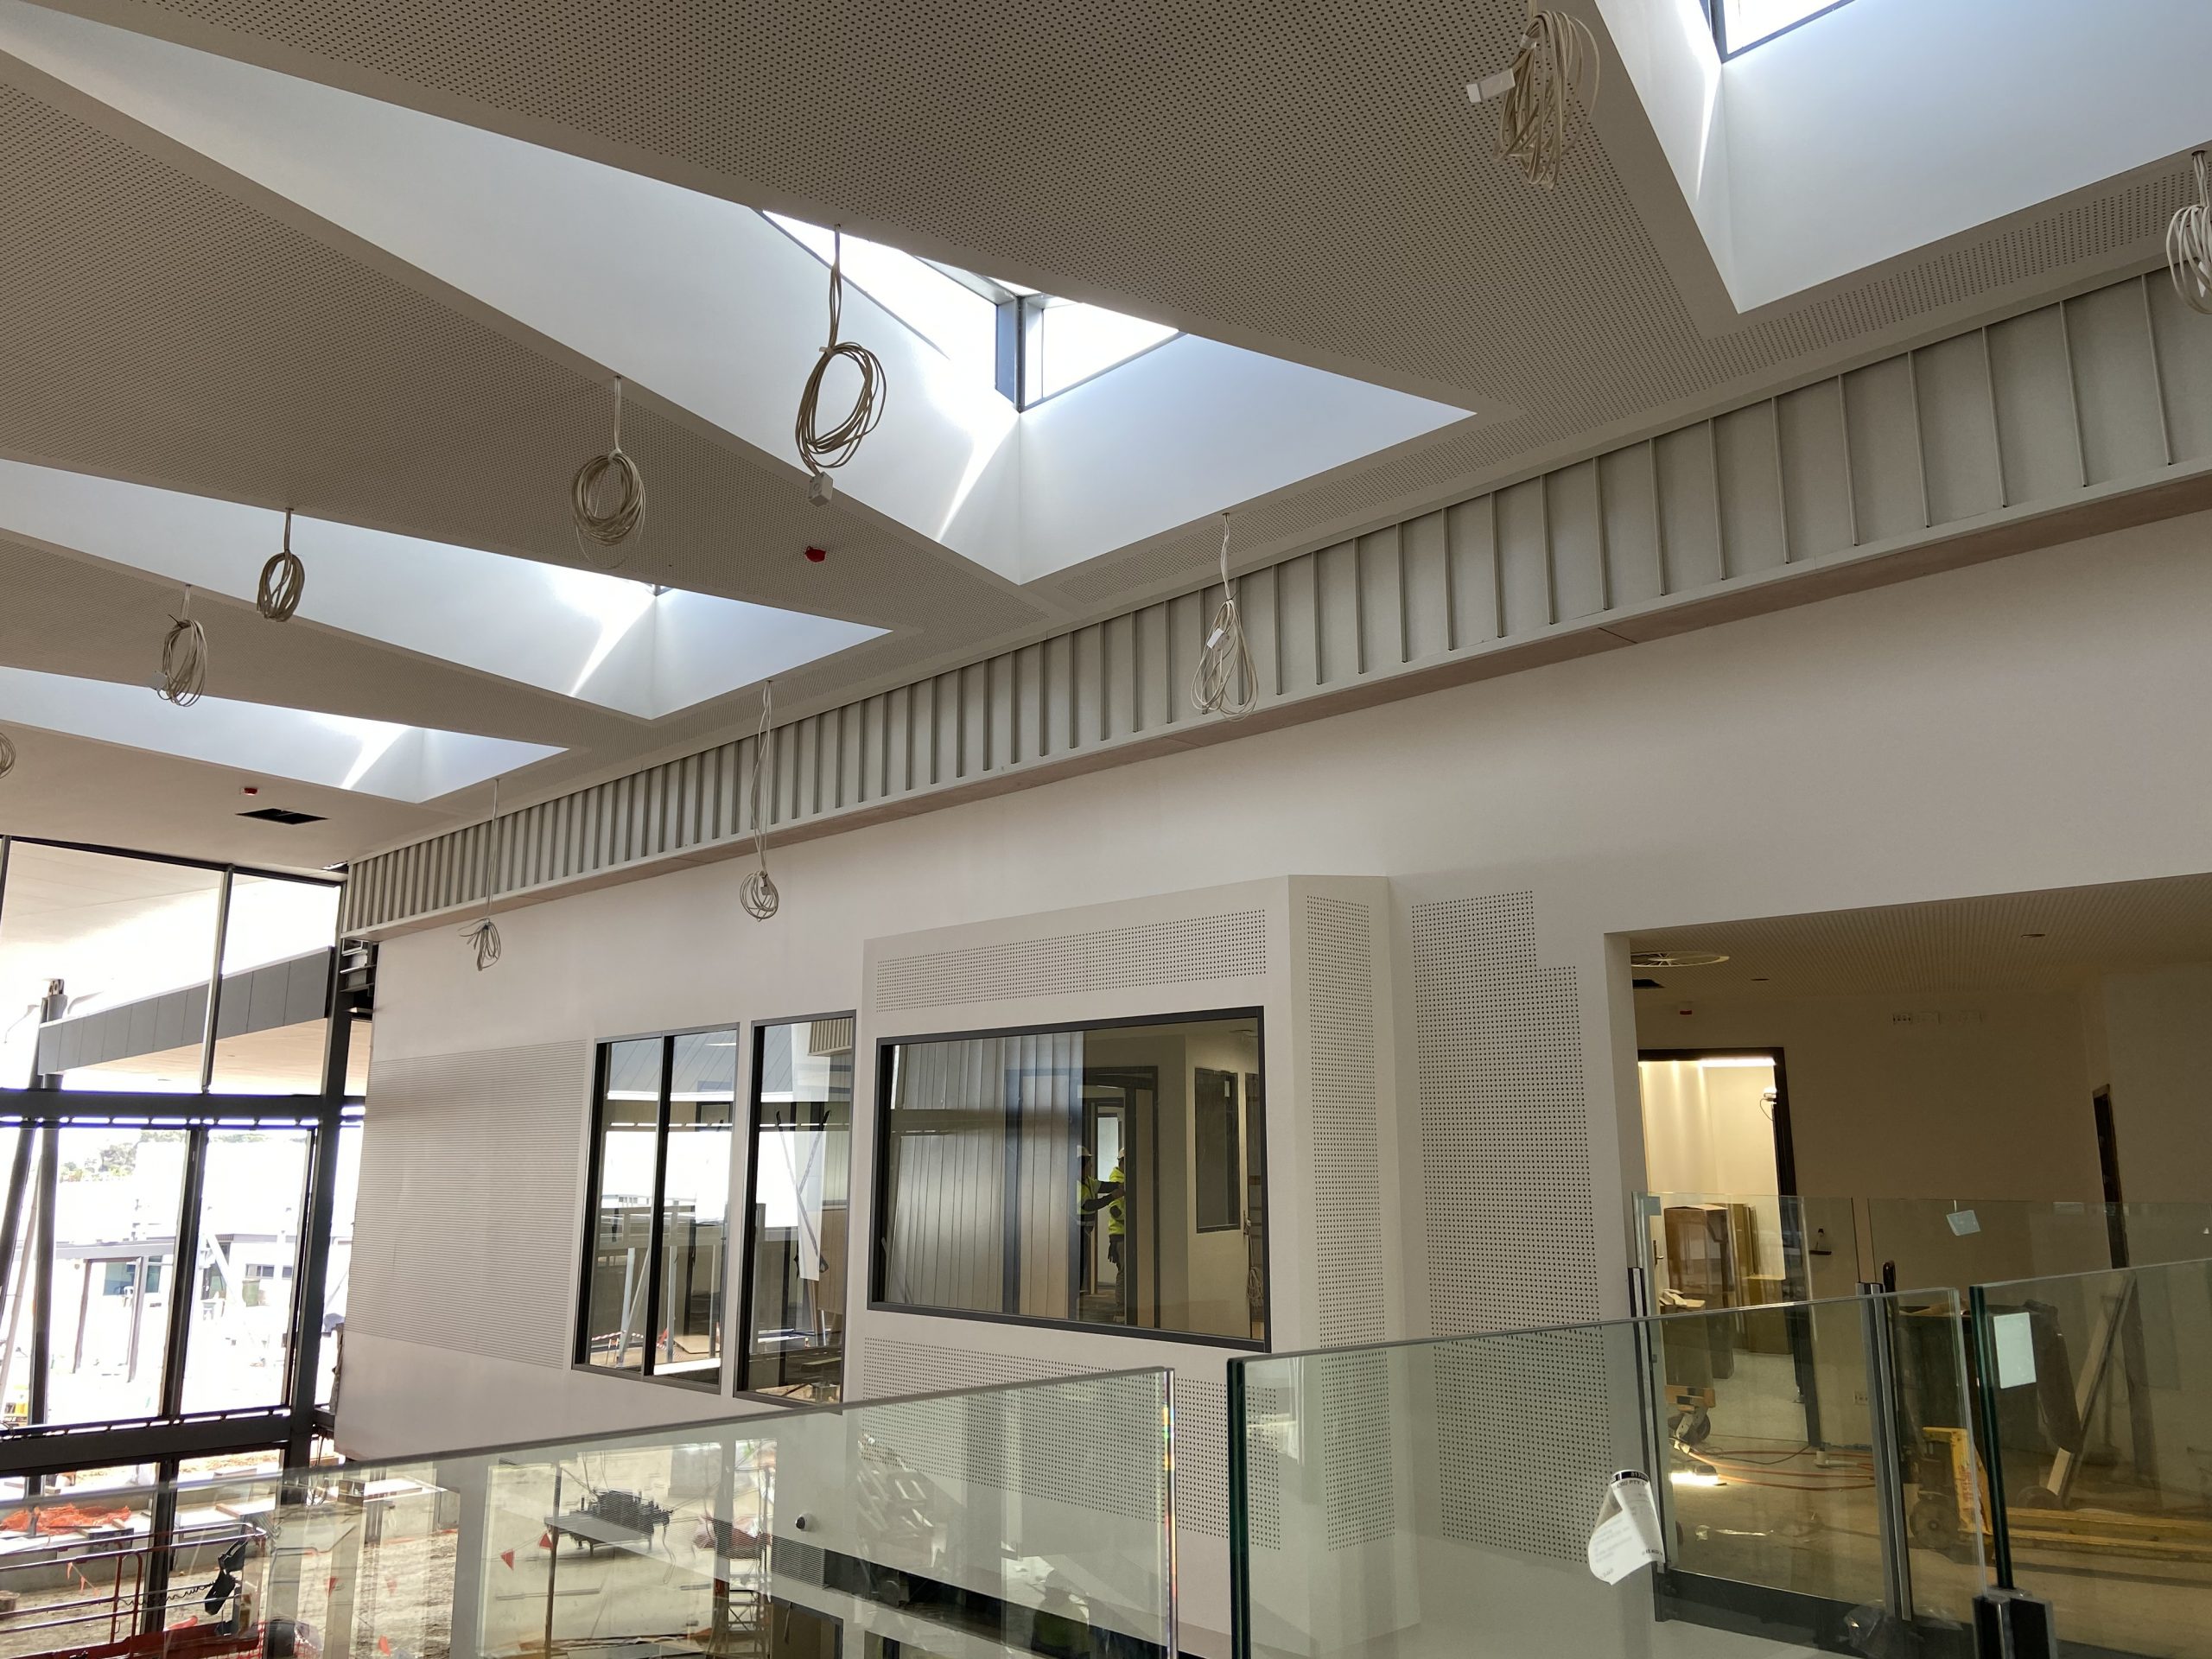 Riverbanks College interior architecture